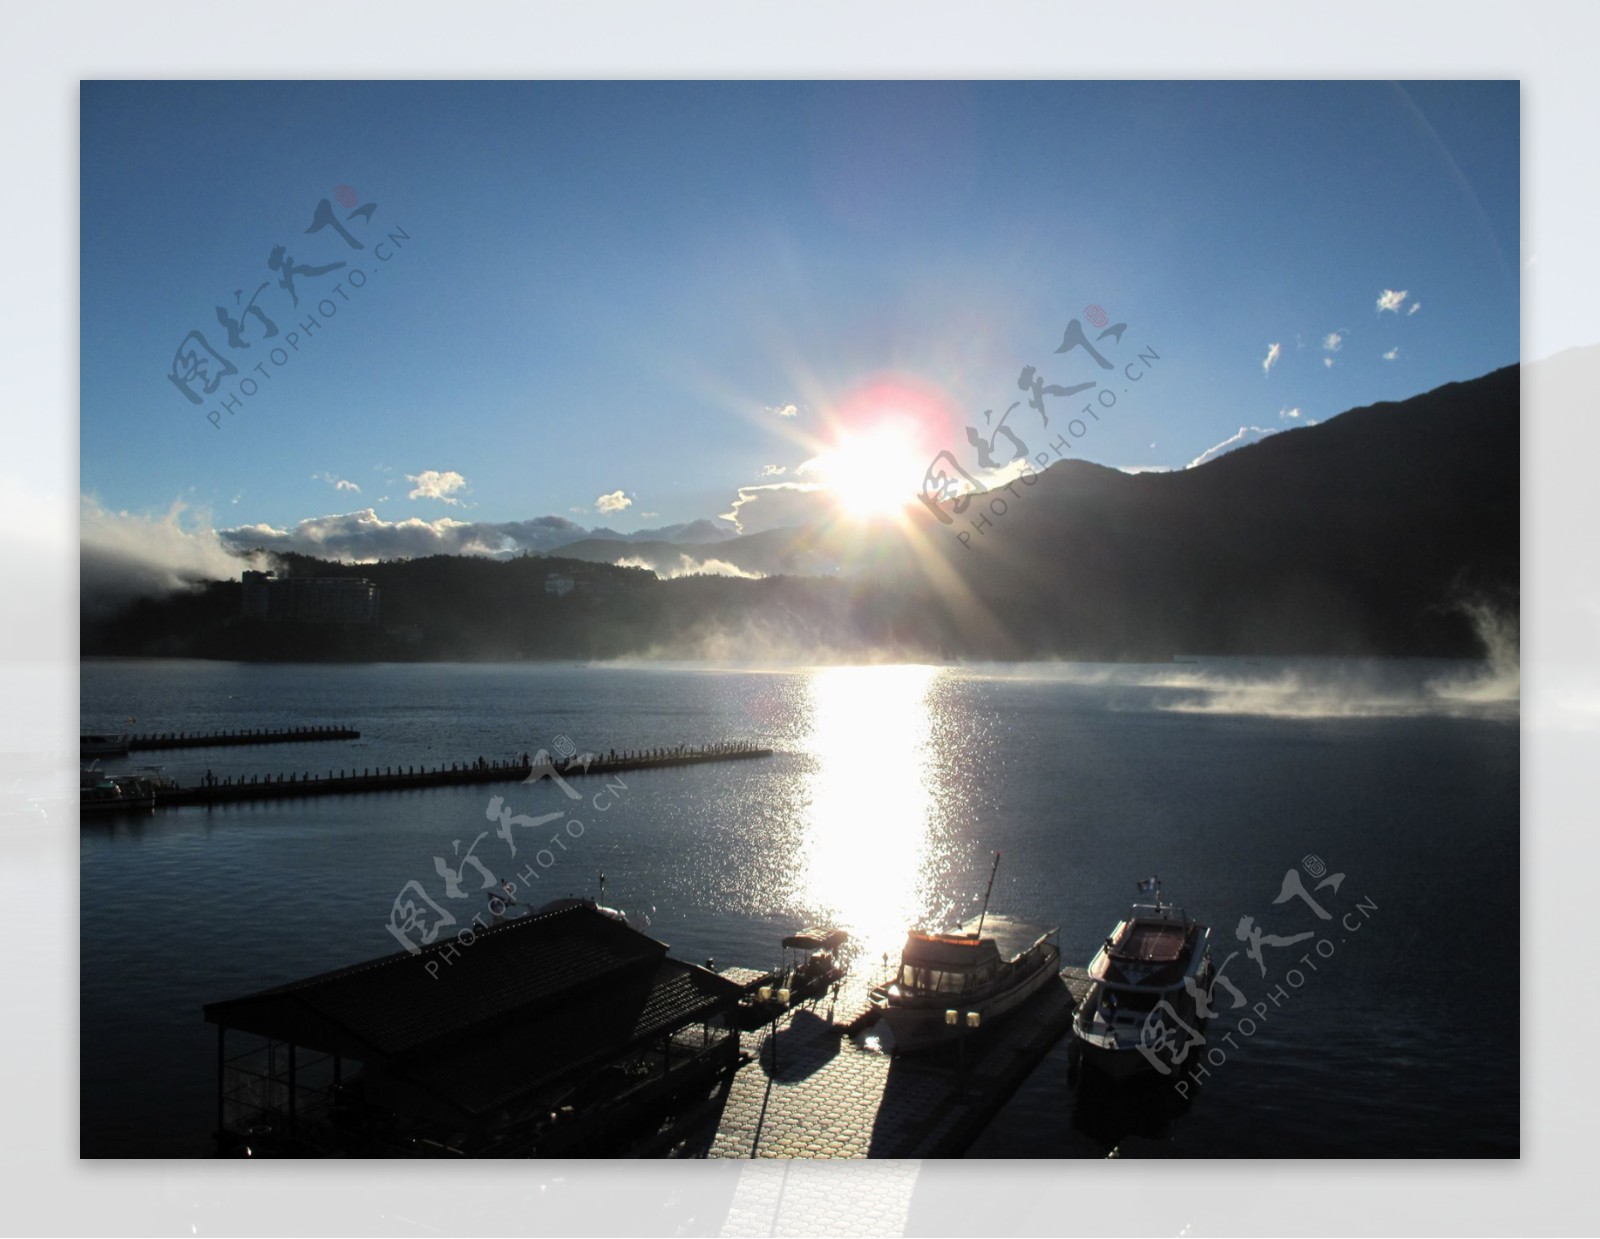 高山湖水图片